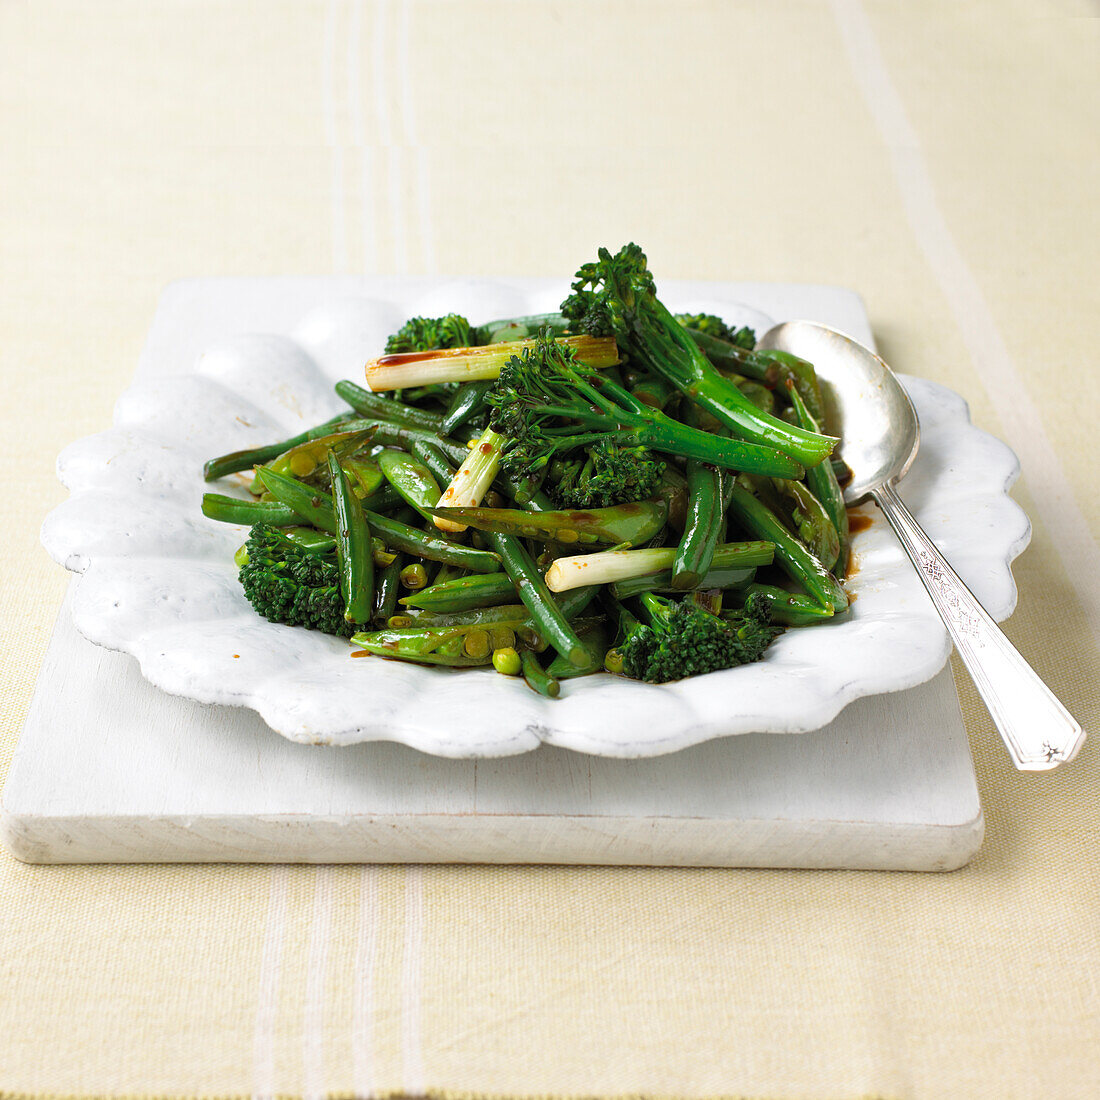 Stir fry green vegetables